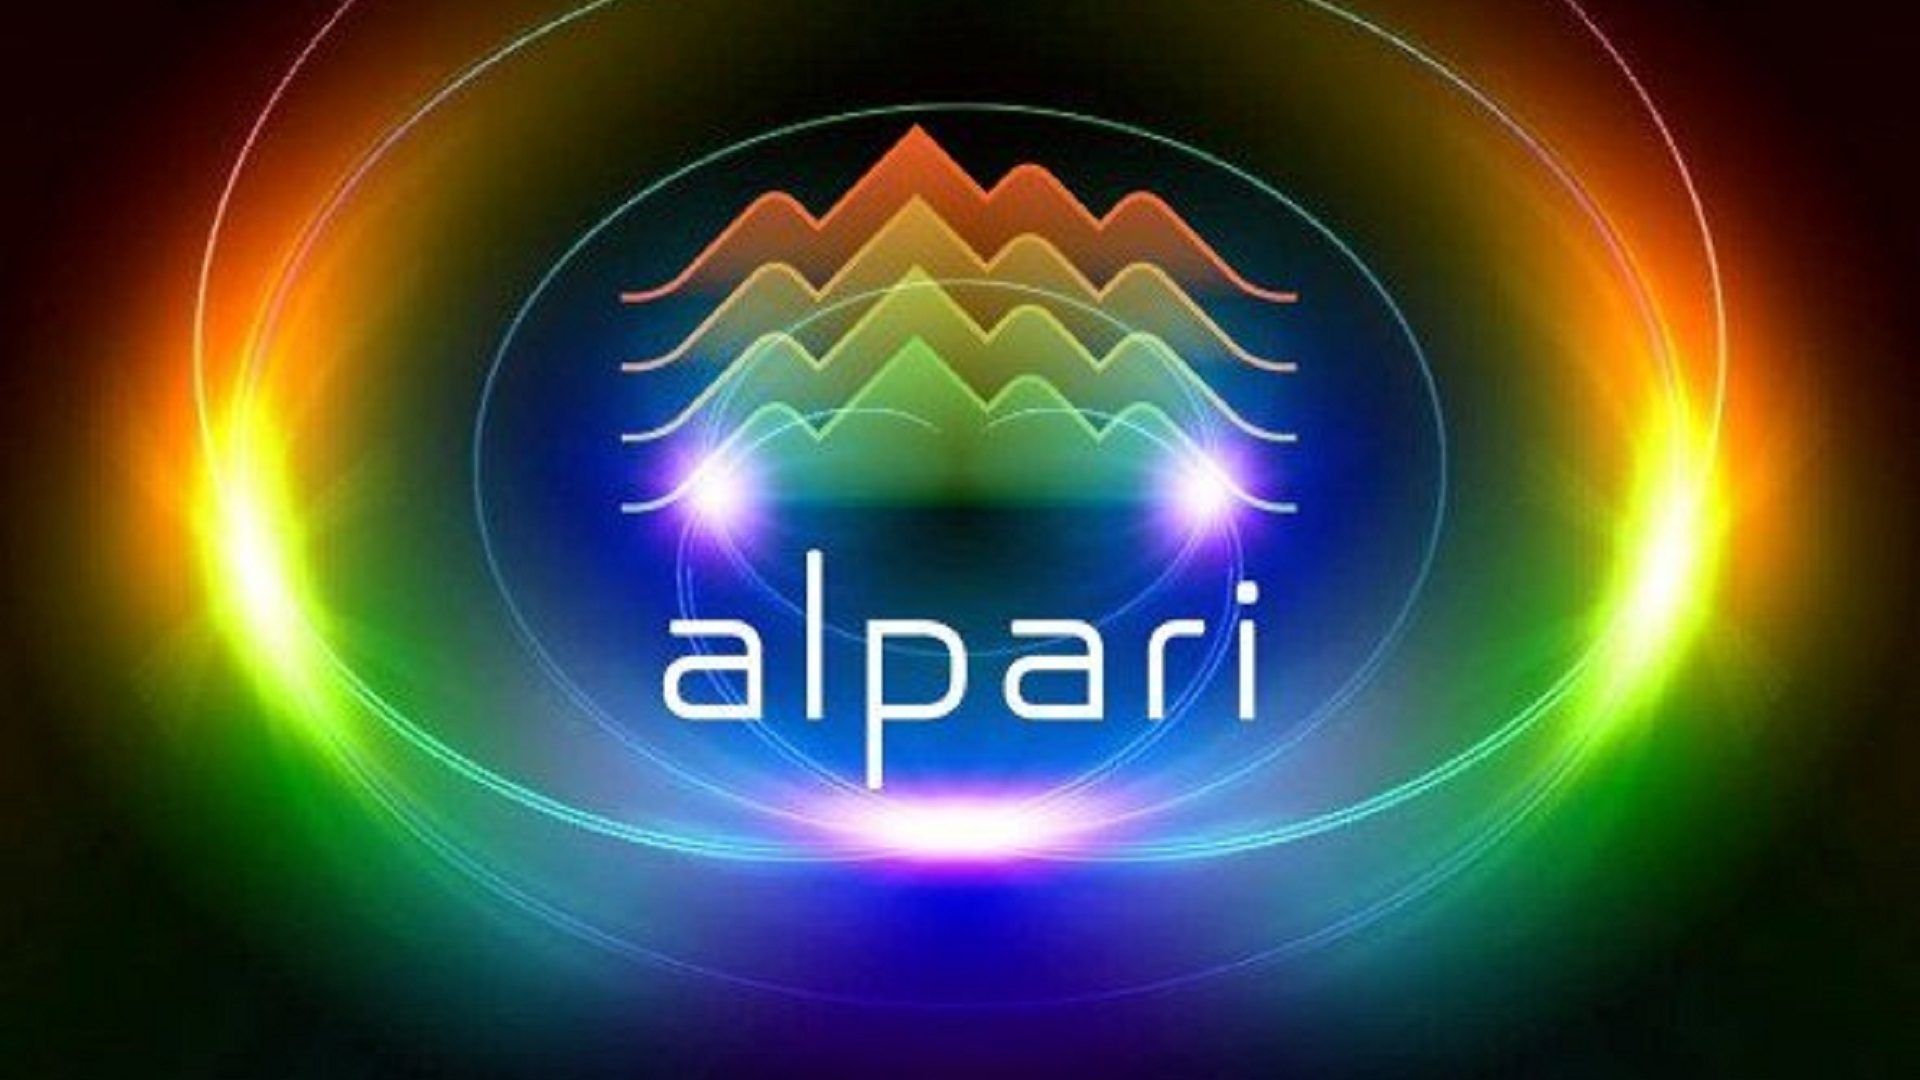 Alpari